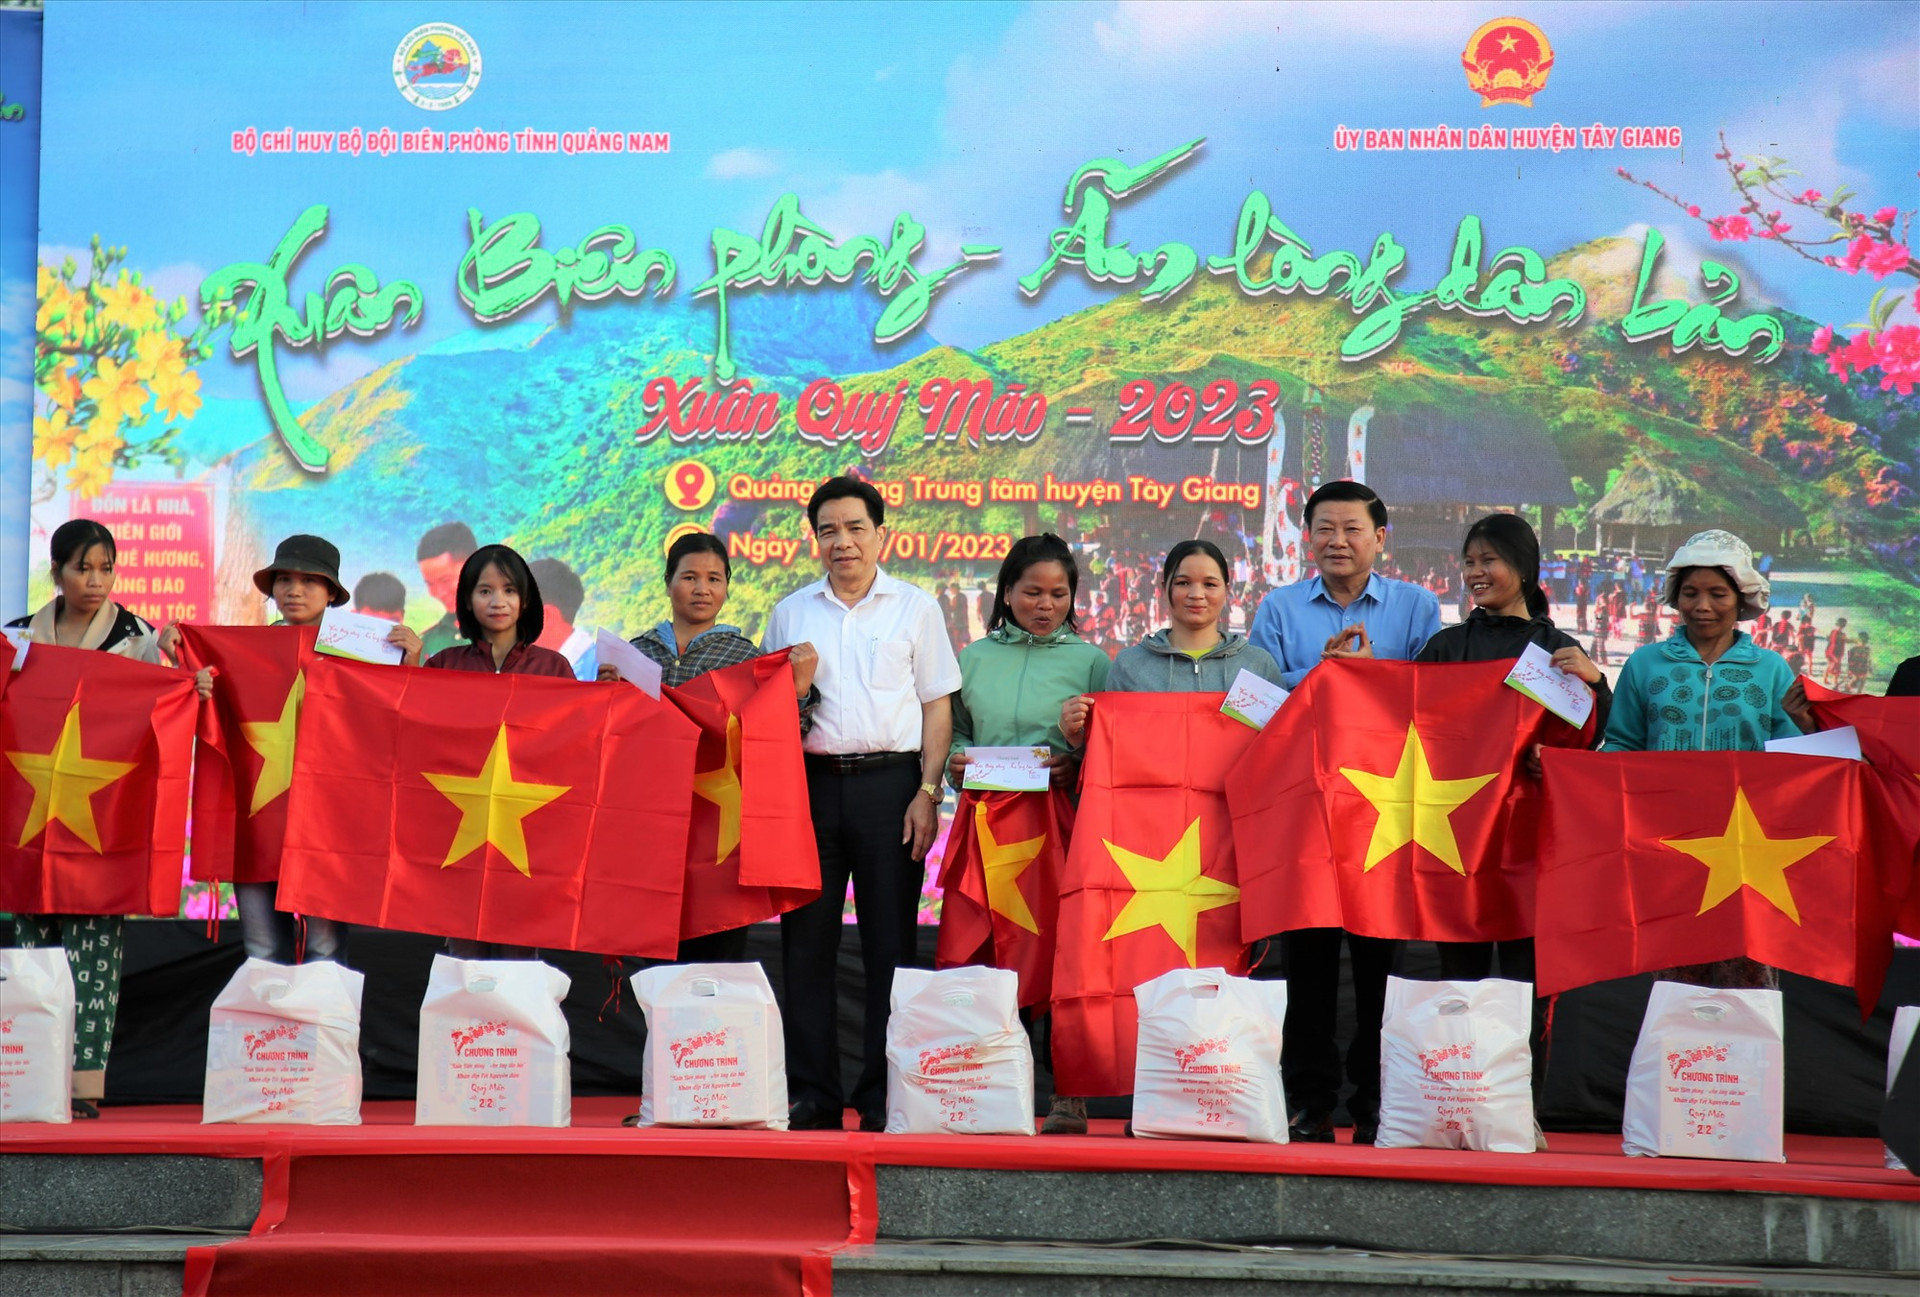 Đại diện lãnh đạo tỉnh trao tặng cờ Tổ quốc cho người dân trong chương trình “Xuân biên phòng - Ấm lòng dân bản” được tổ chức tại Tây Giang. Ảnh: A.N